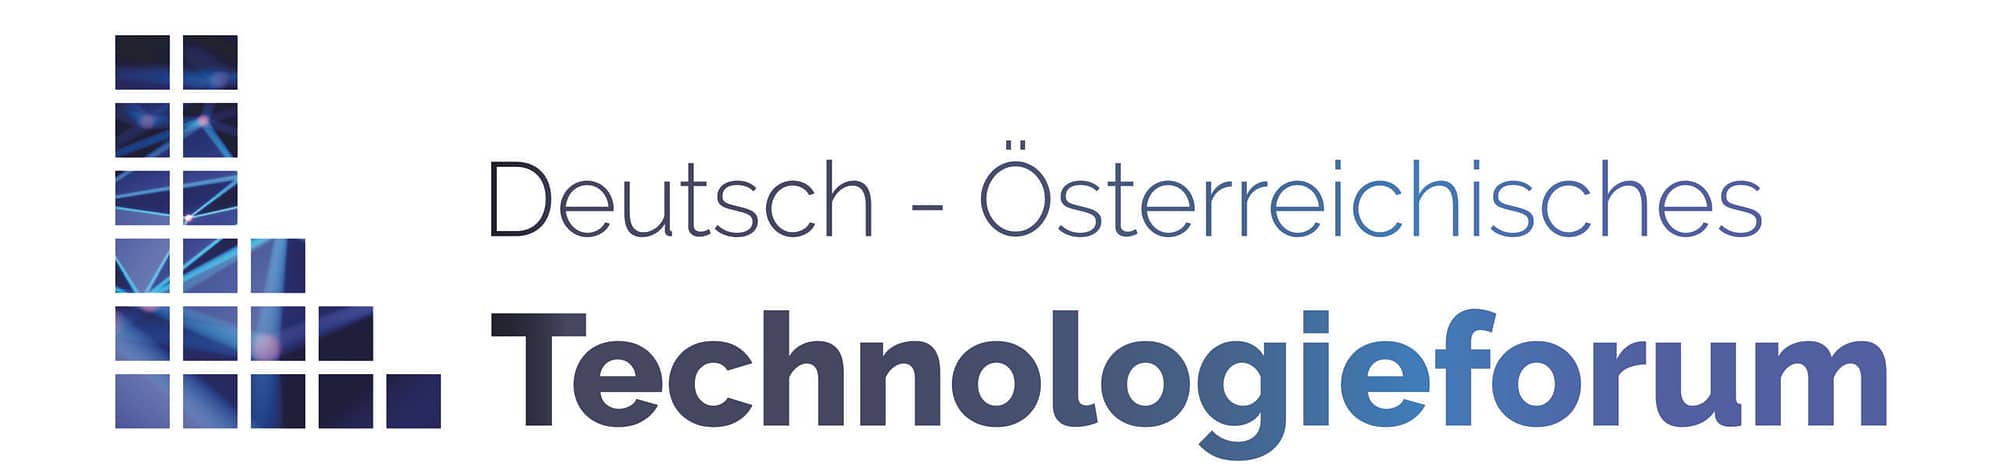 Deutsch-Österreichisches Technologieforum